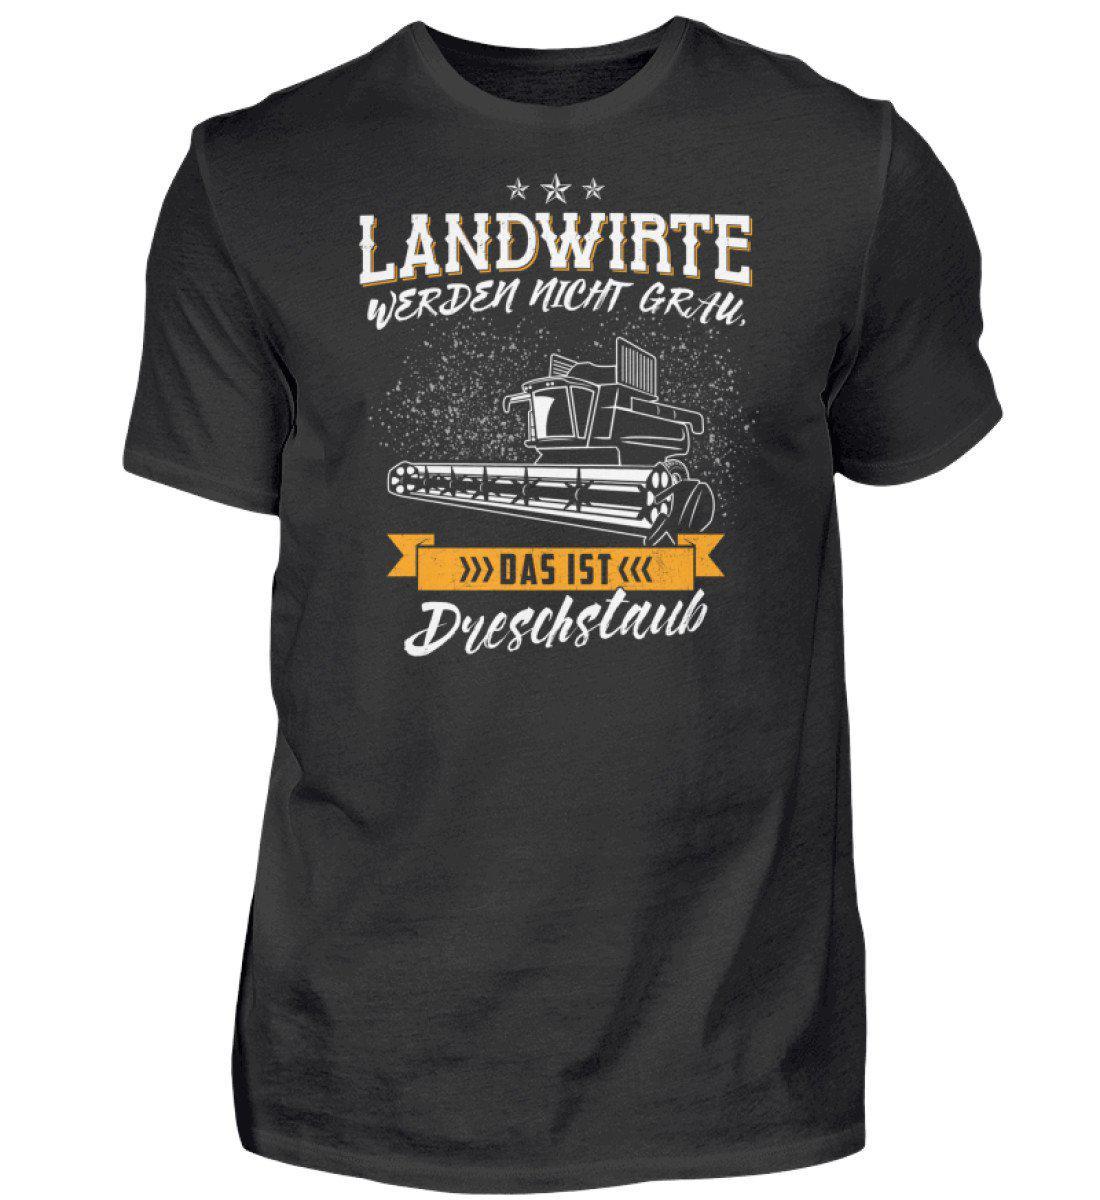 Landwirte grau Dreschstaub · Herren T-Shirt-Herren Basic T-Shirt-Black-S-Agrarstarz